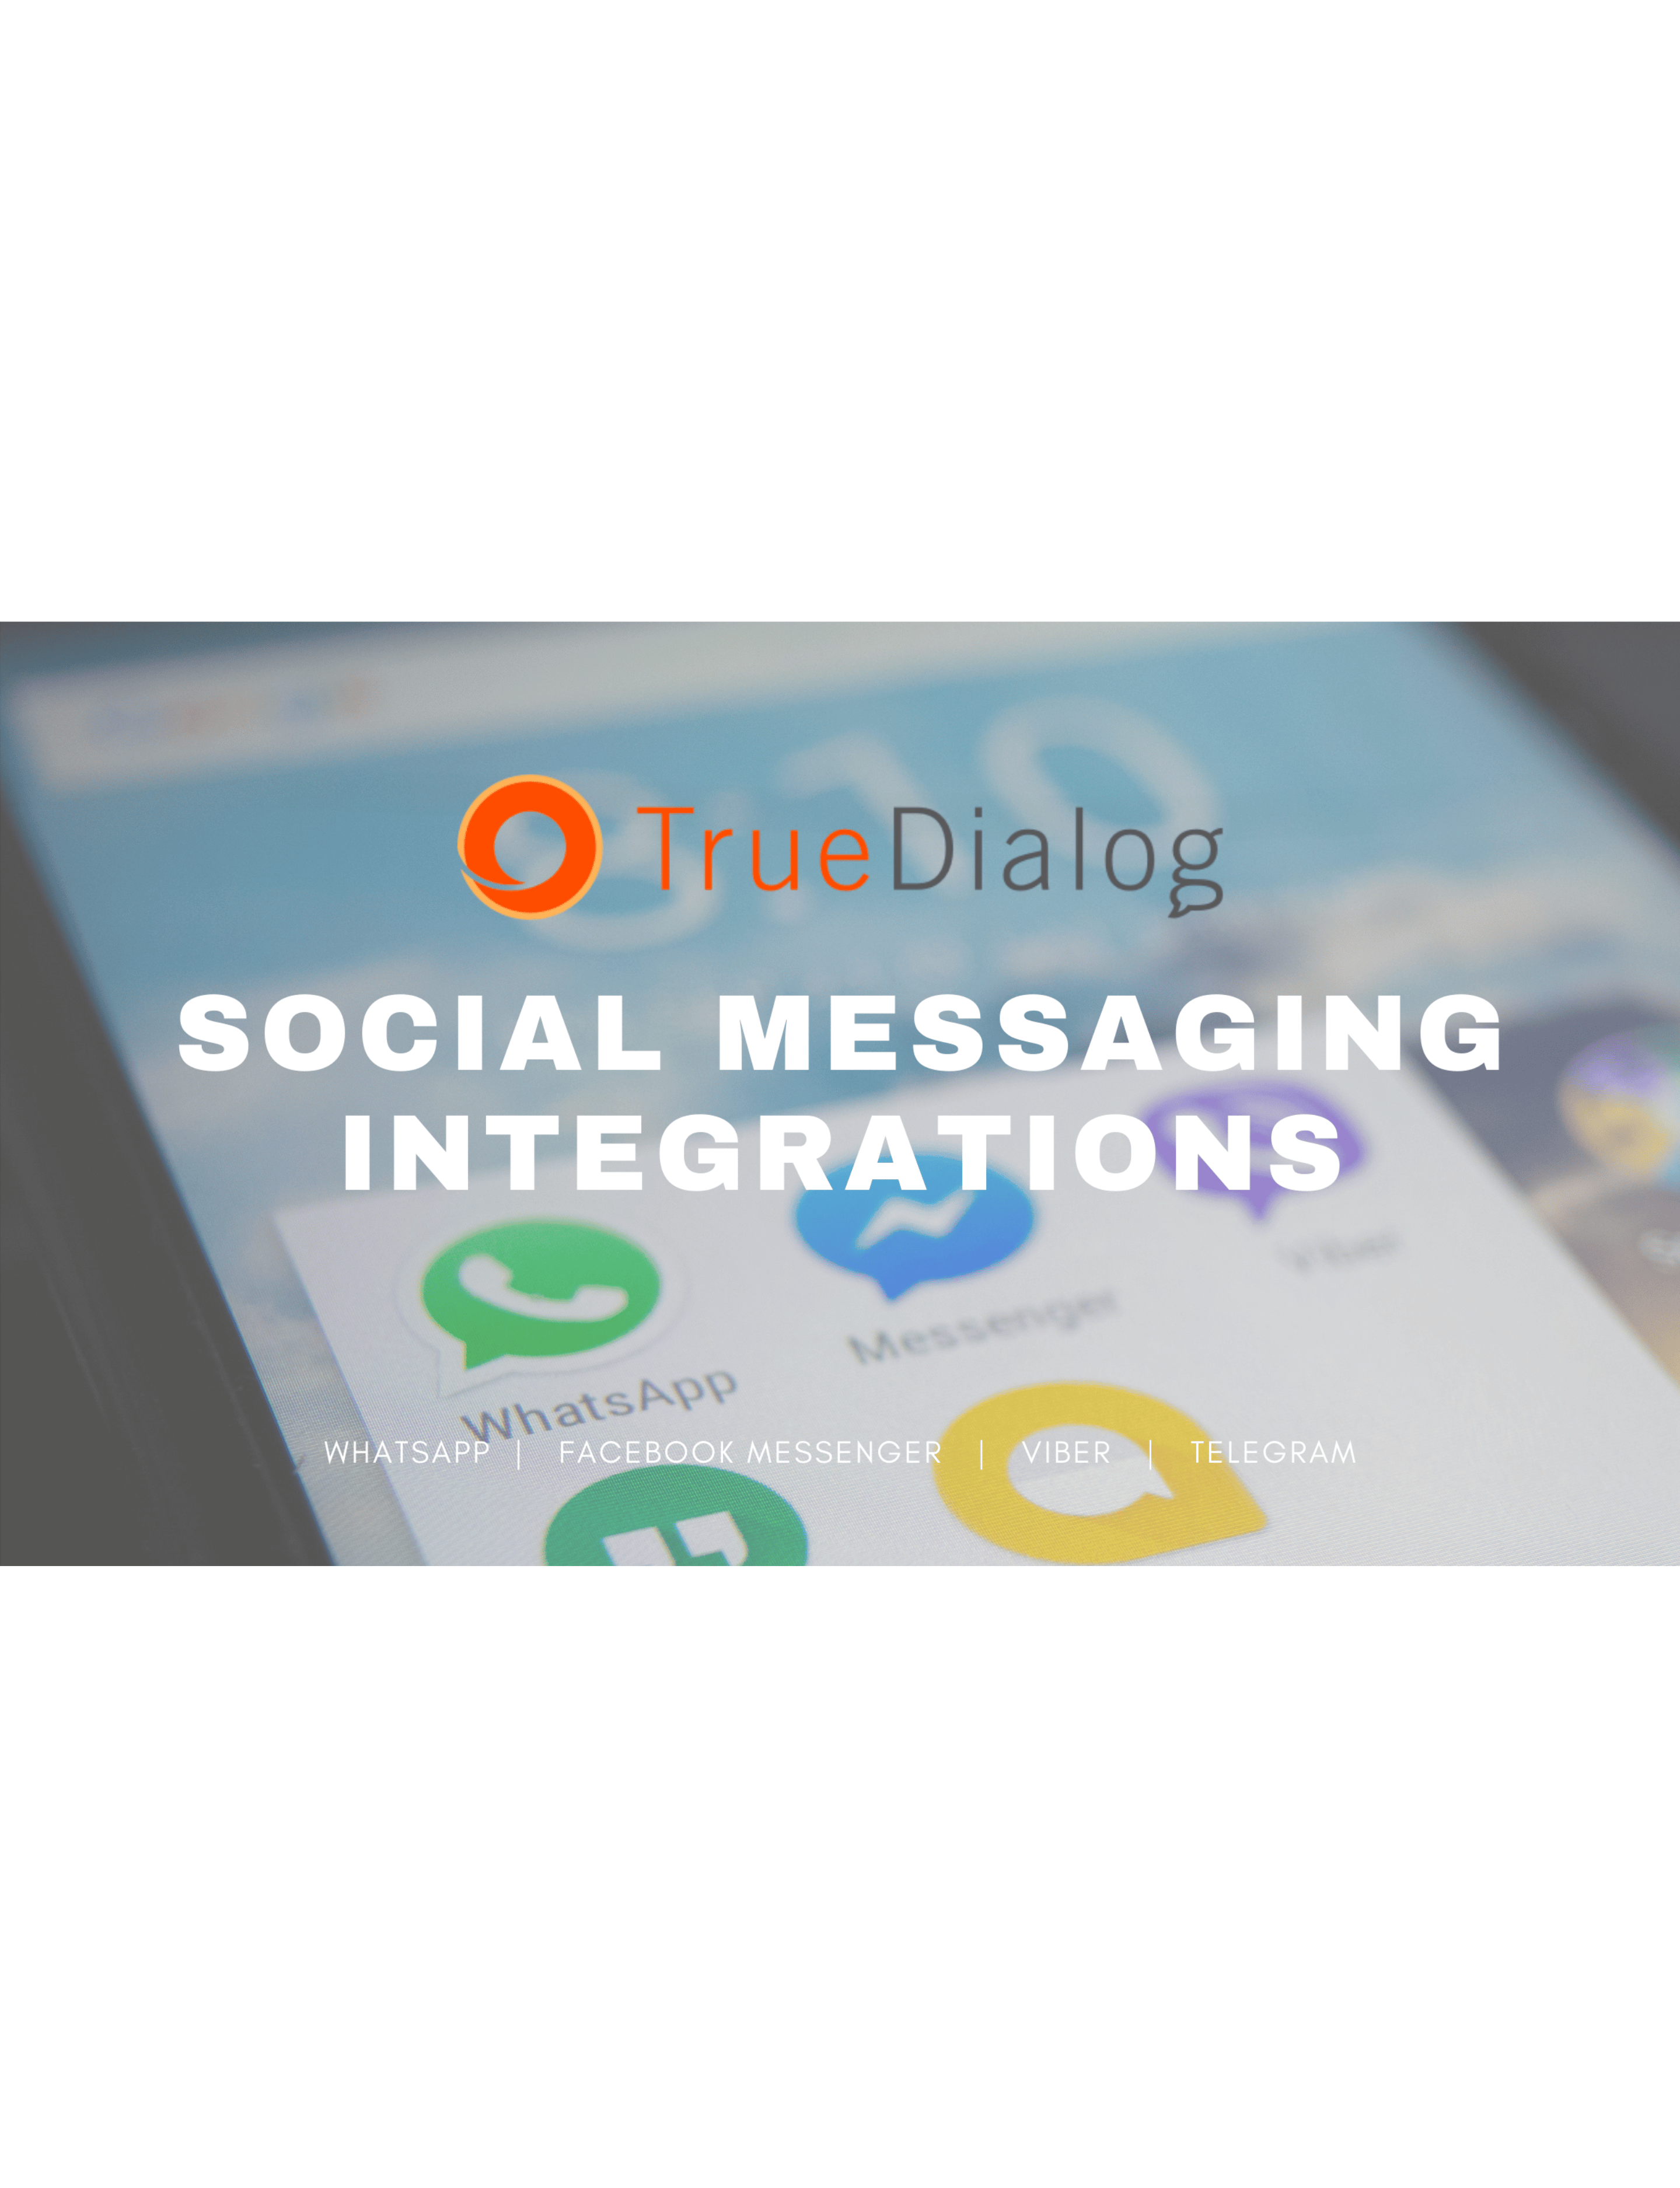 True Dialog Social Media Integrations